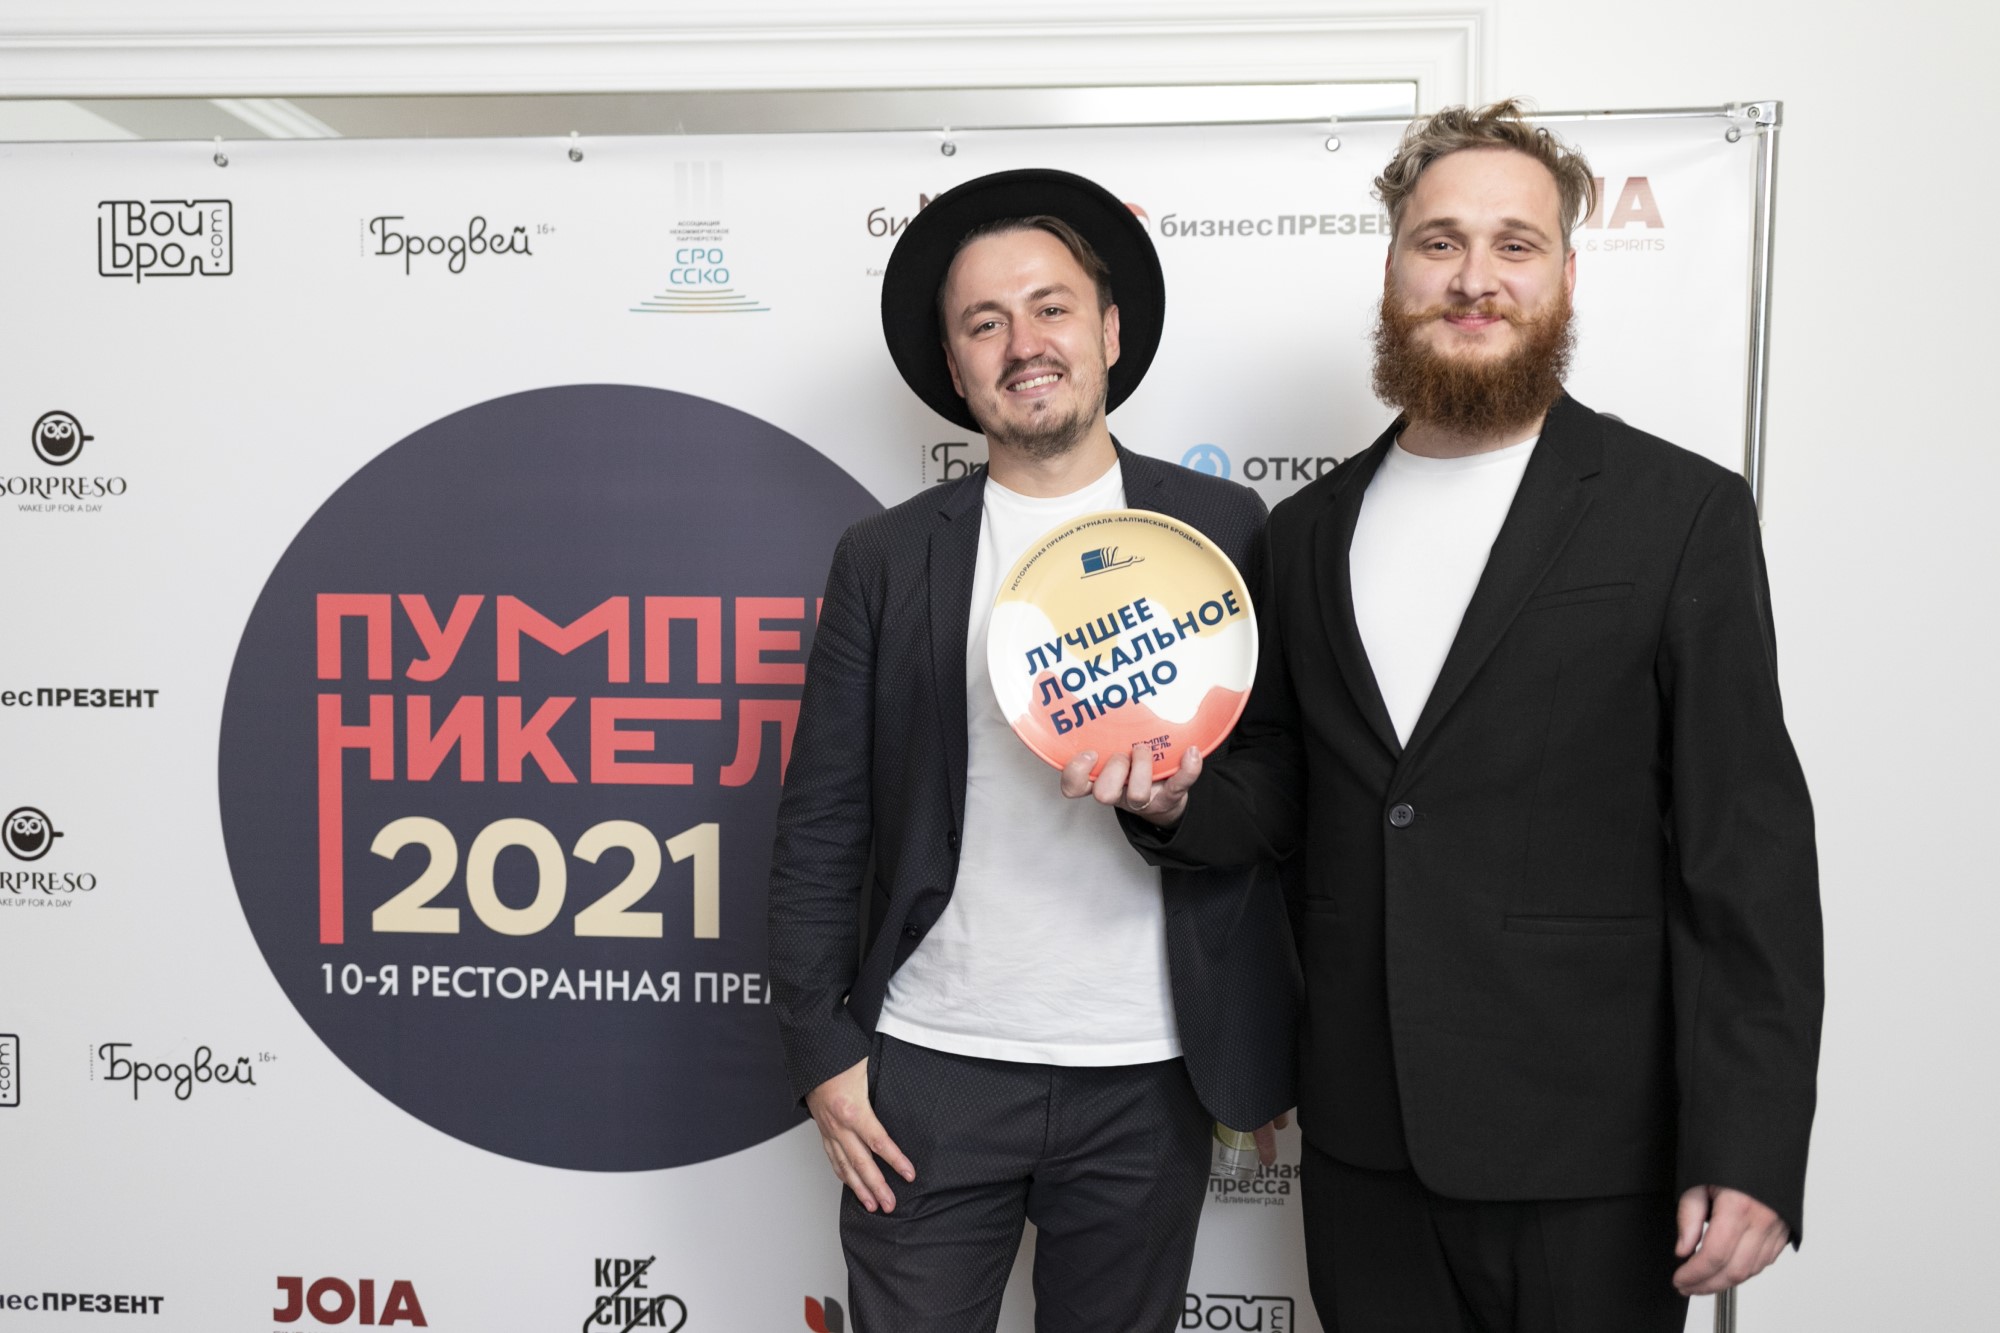 Калининградский гастробар впервые попал в топ-100 ресторанов России премии WhereToEat 